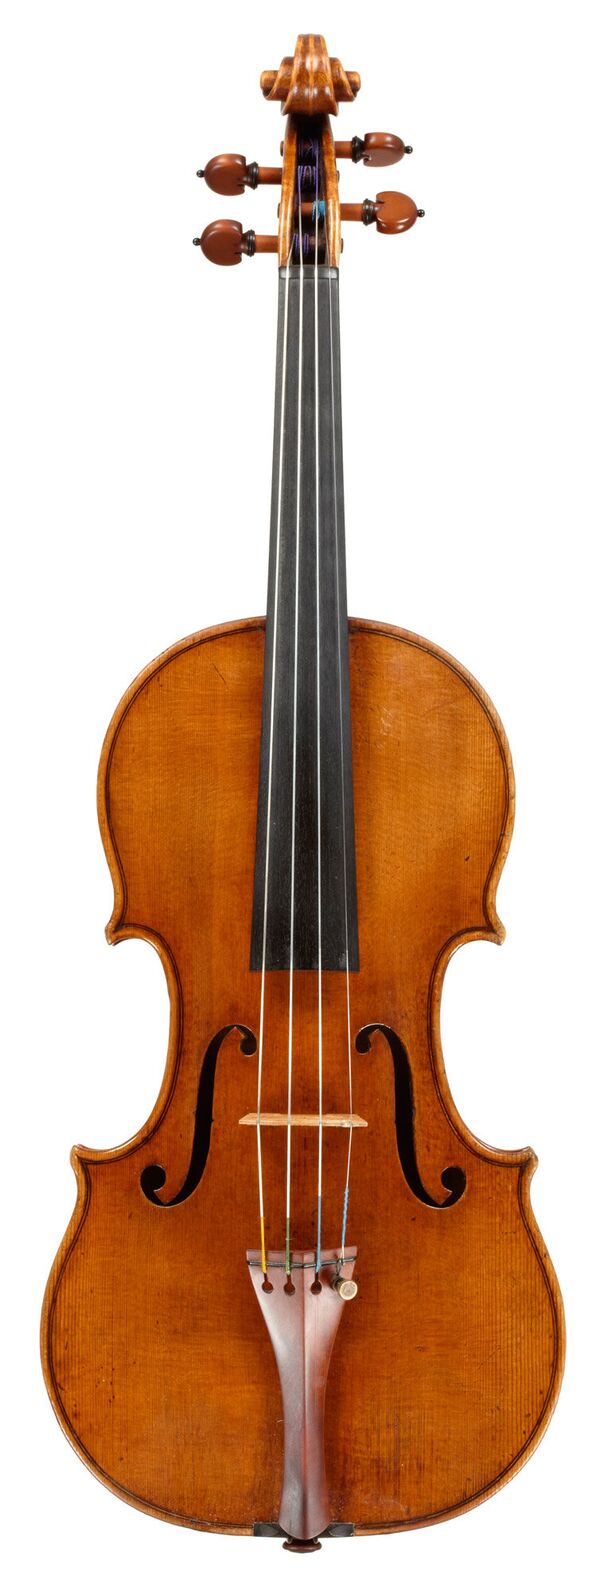 Скрипка Molitor, созданная знаменитым мастером Антонио Страдивари